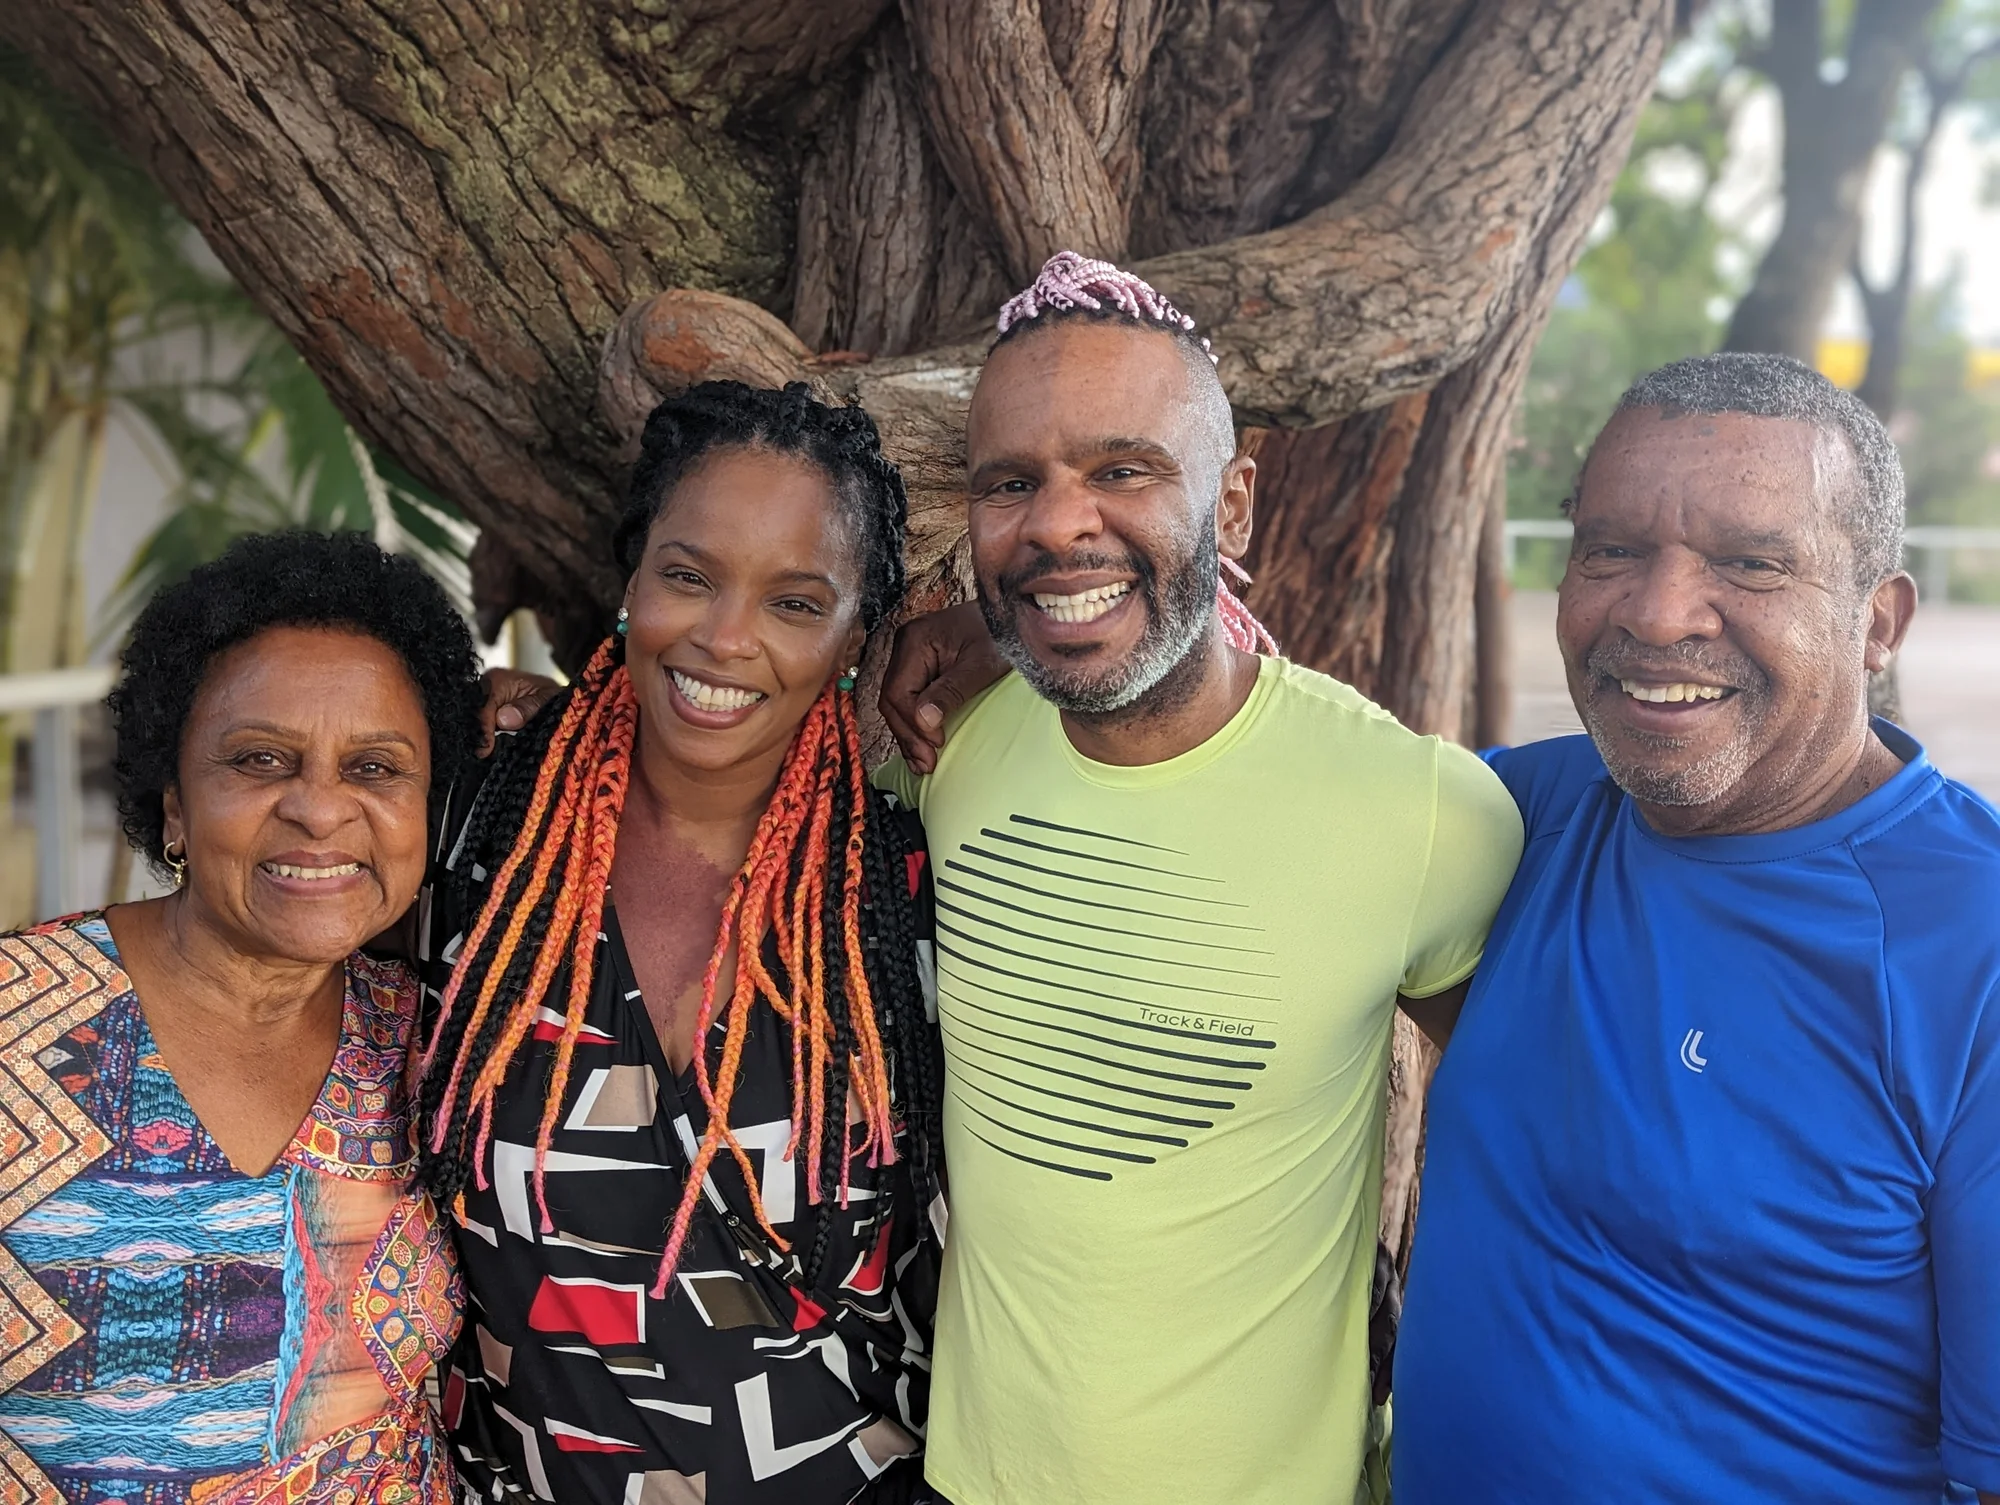 Daniel Castro do Nascimento mit seinen Eltern und seiner Schwester in Belo Horizonte in Brasilien. Sie stehen vor einem alten Baum und lächeln in die Kamera.